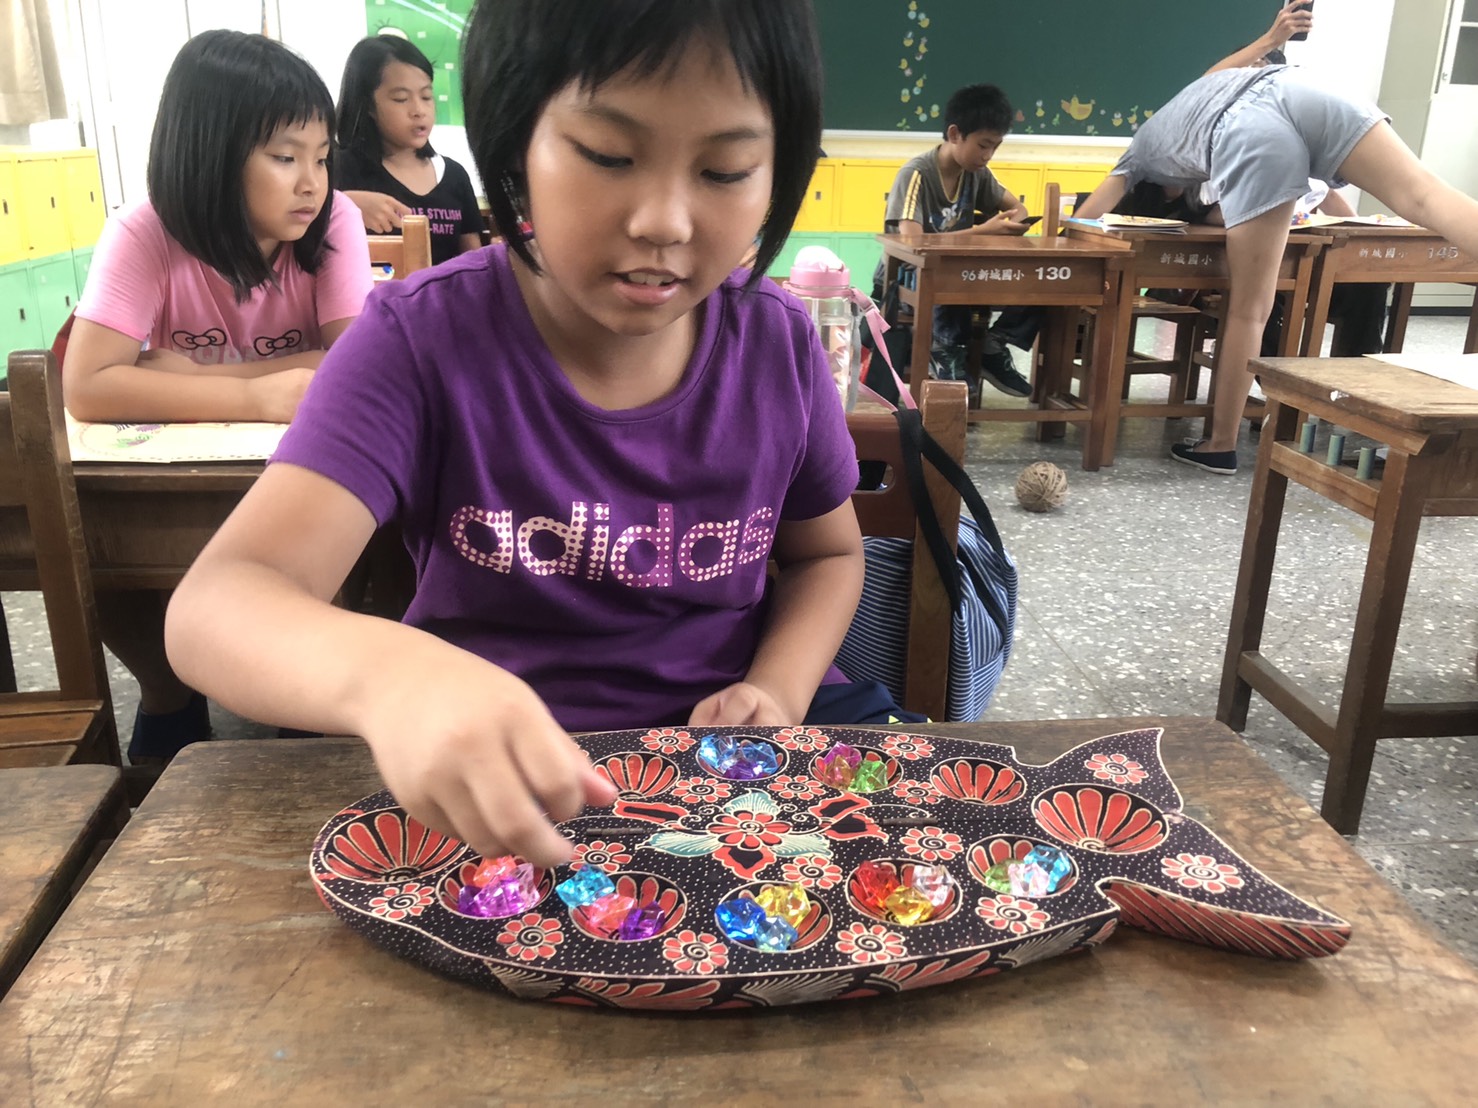 Thông qua trò chơi này, cô Trần Ái Mai bổ sung thêm những câu chuyện từ văn hóa Đông Nam Á để nhiều người có thể tìm hiểu thêm và học ngôn ngữ các quốc gia Đông Nam Á. (Nguồn ảnh: Cô Trần Ái Mai cung cấp)